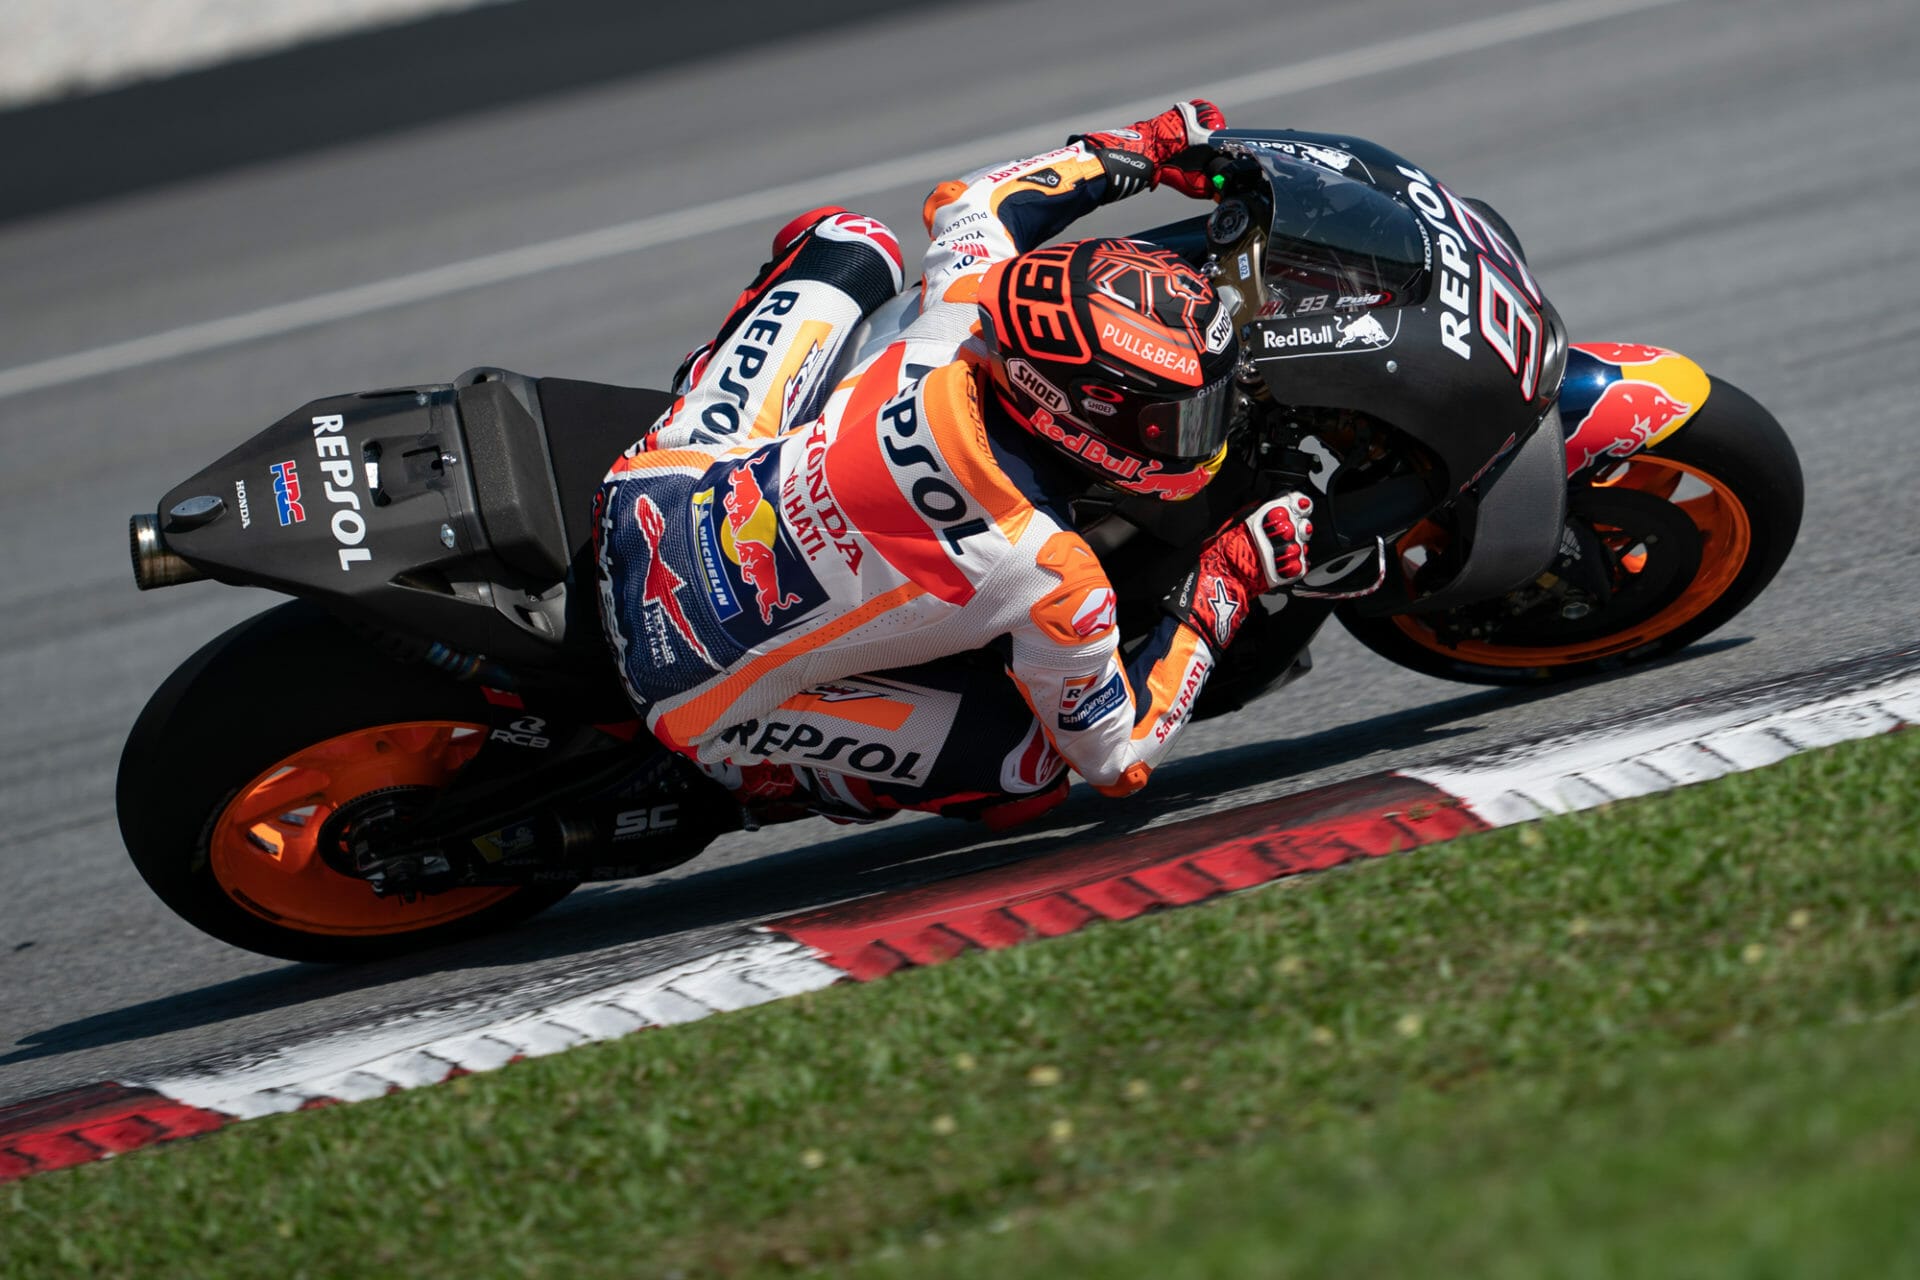 Marquez schon wieder auf der MotoGP Rakete
- auch in der MOTORRAD NACHRICHTEN APP